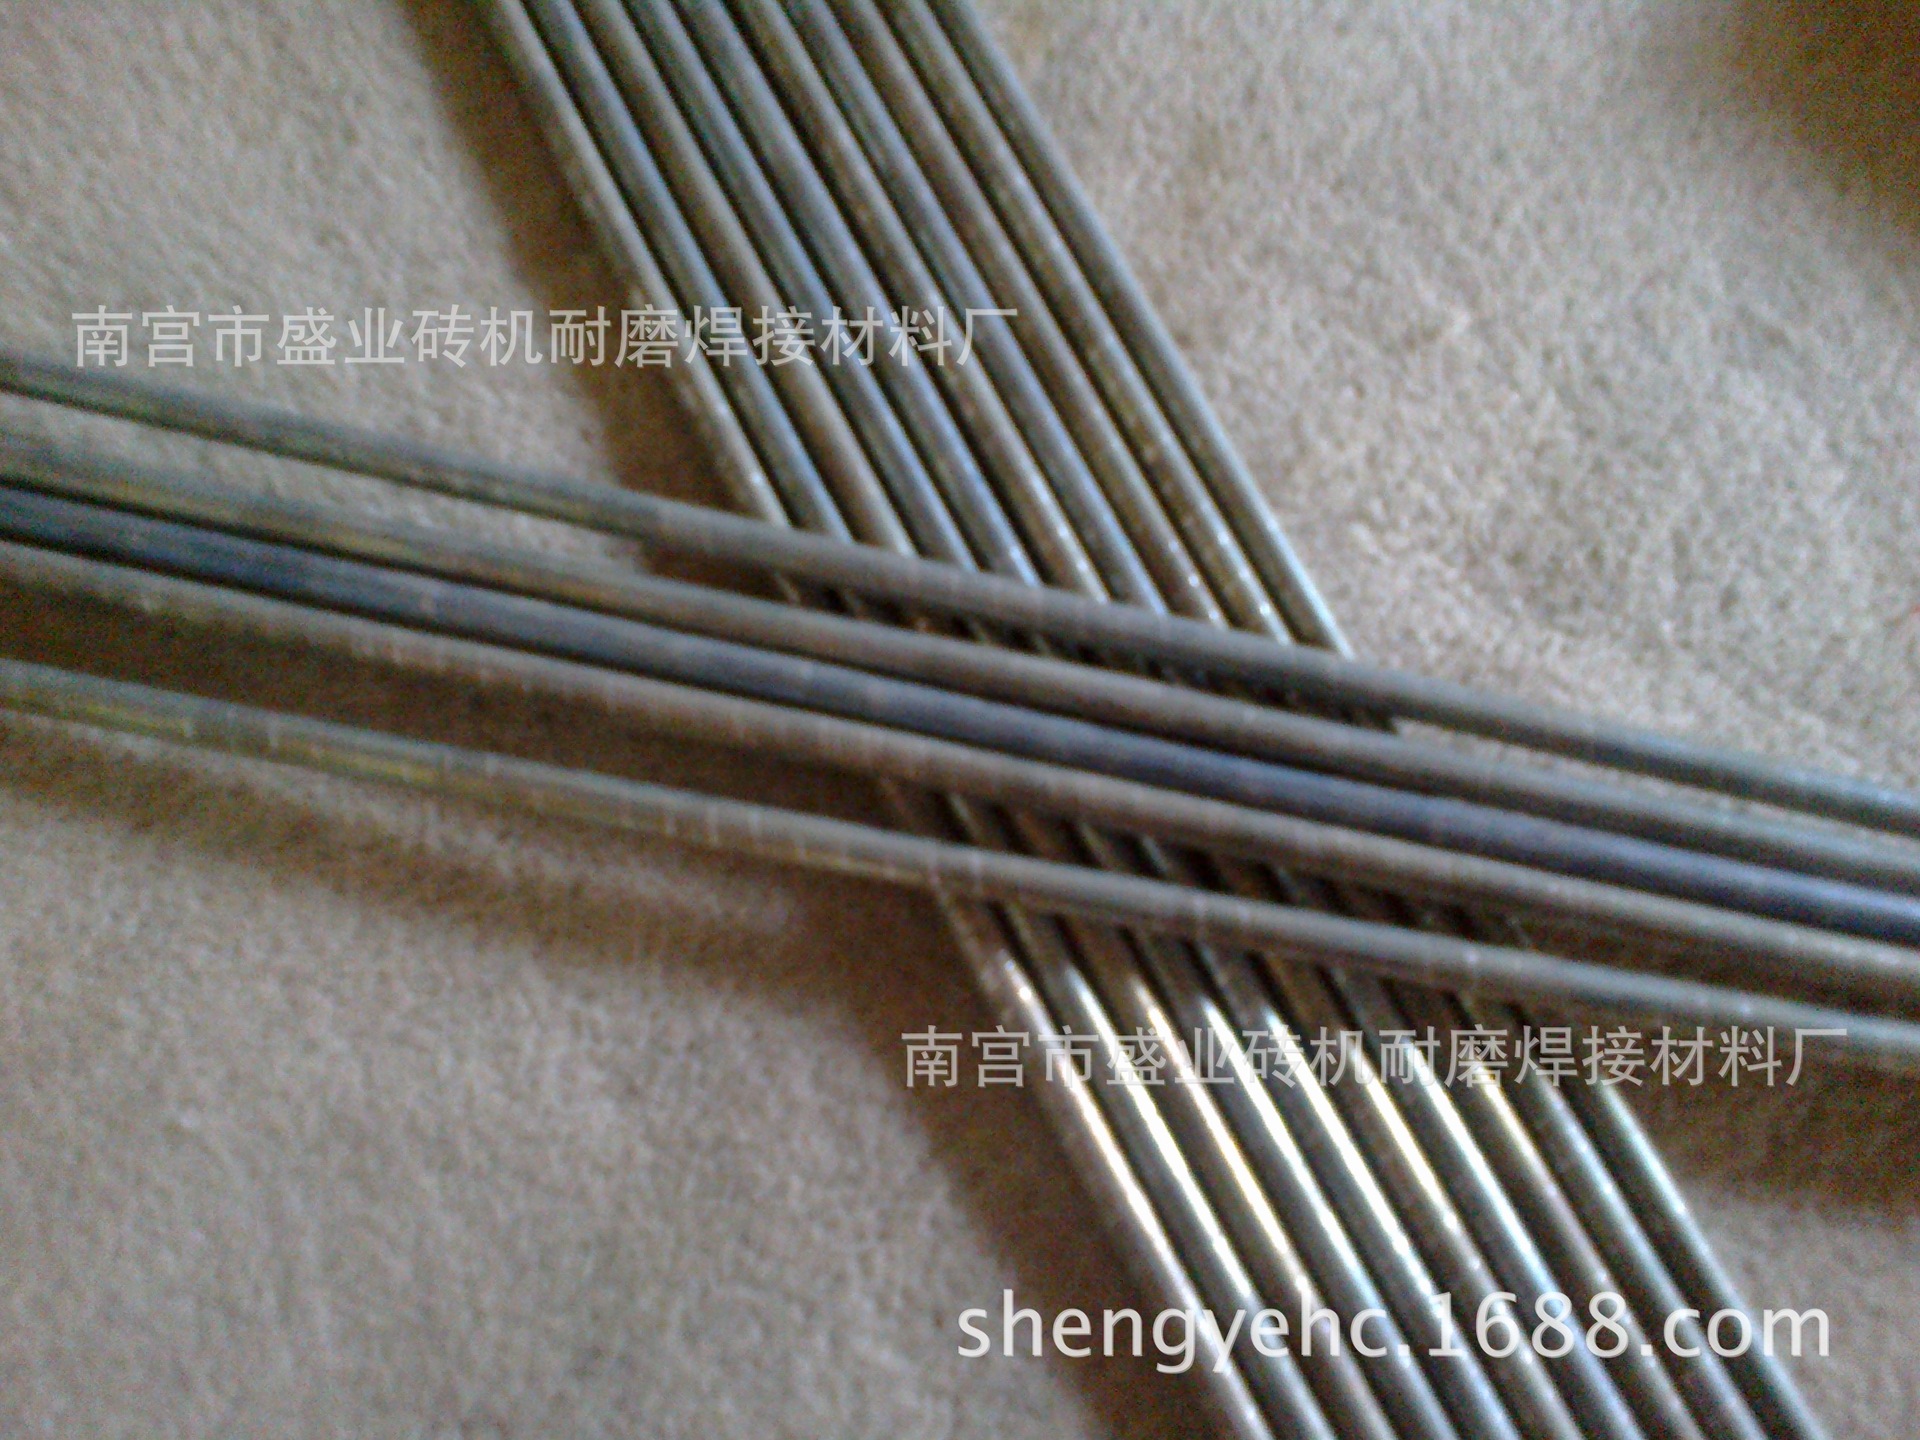 钴基堆焊焊丝 钴基合金焊丝示例图2